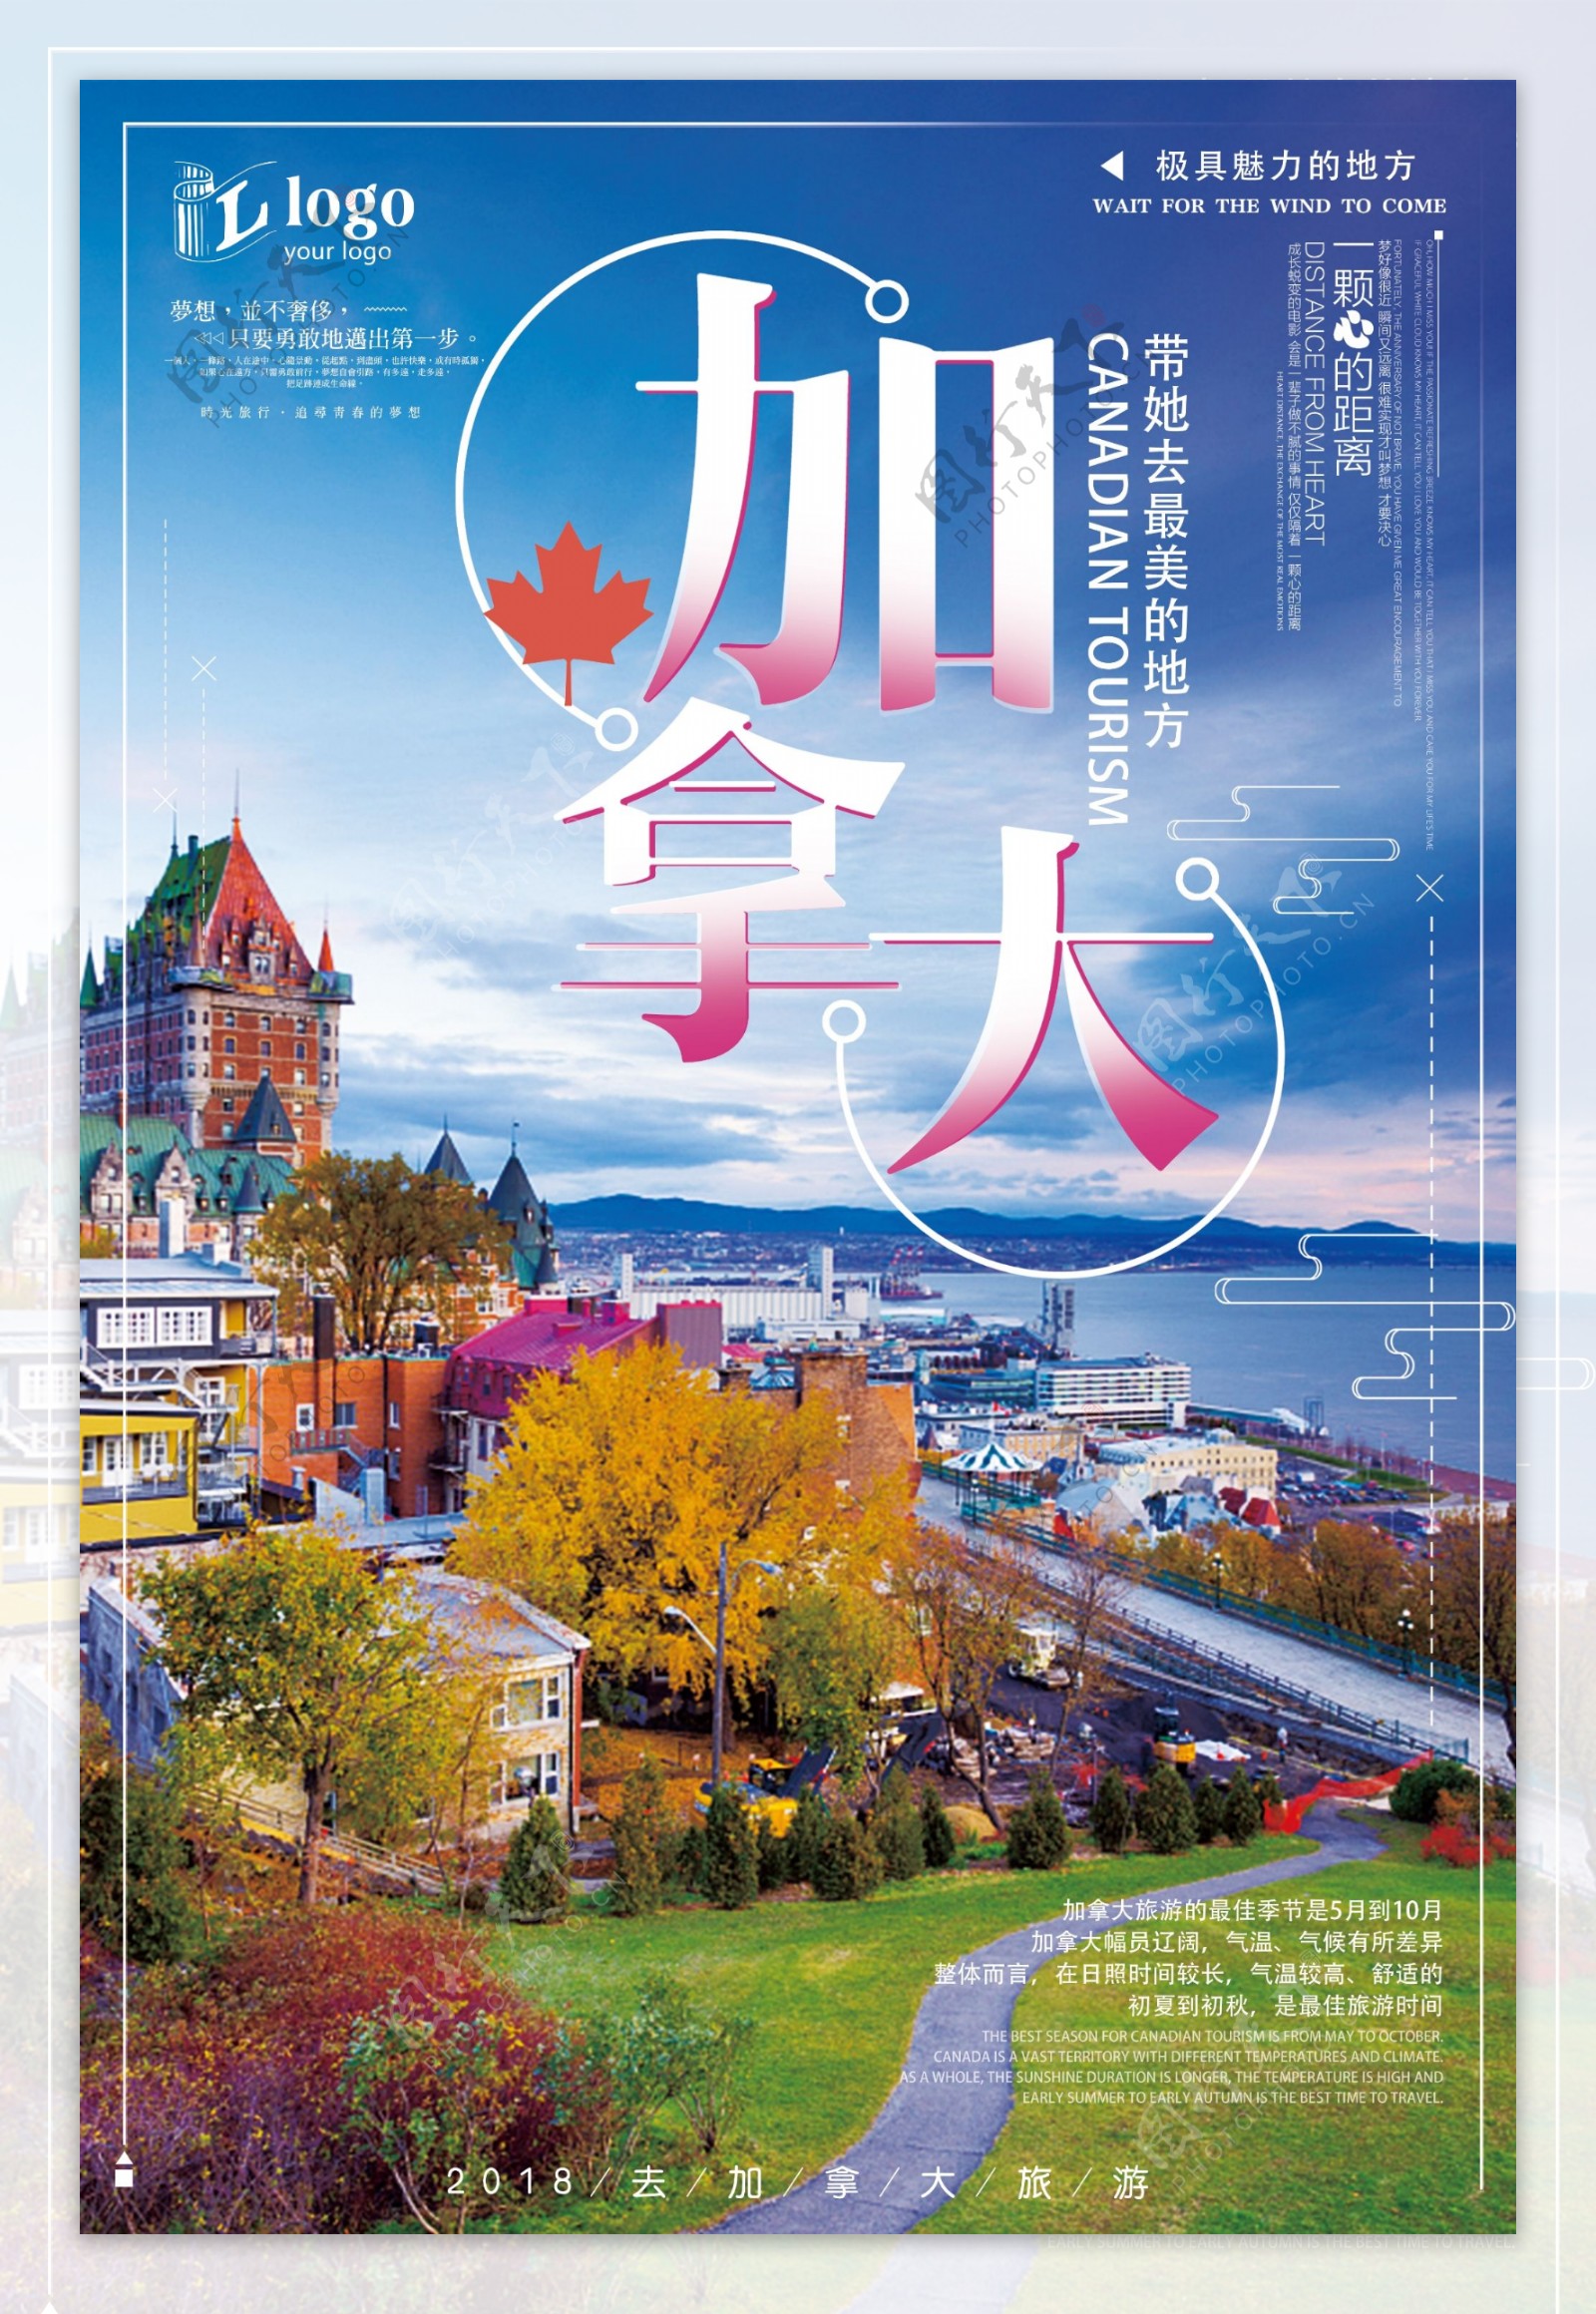 梦幻简约大气加拿大旅游创意宣传海报设计